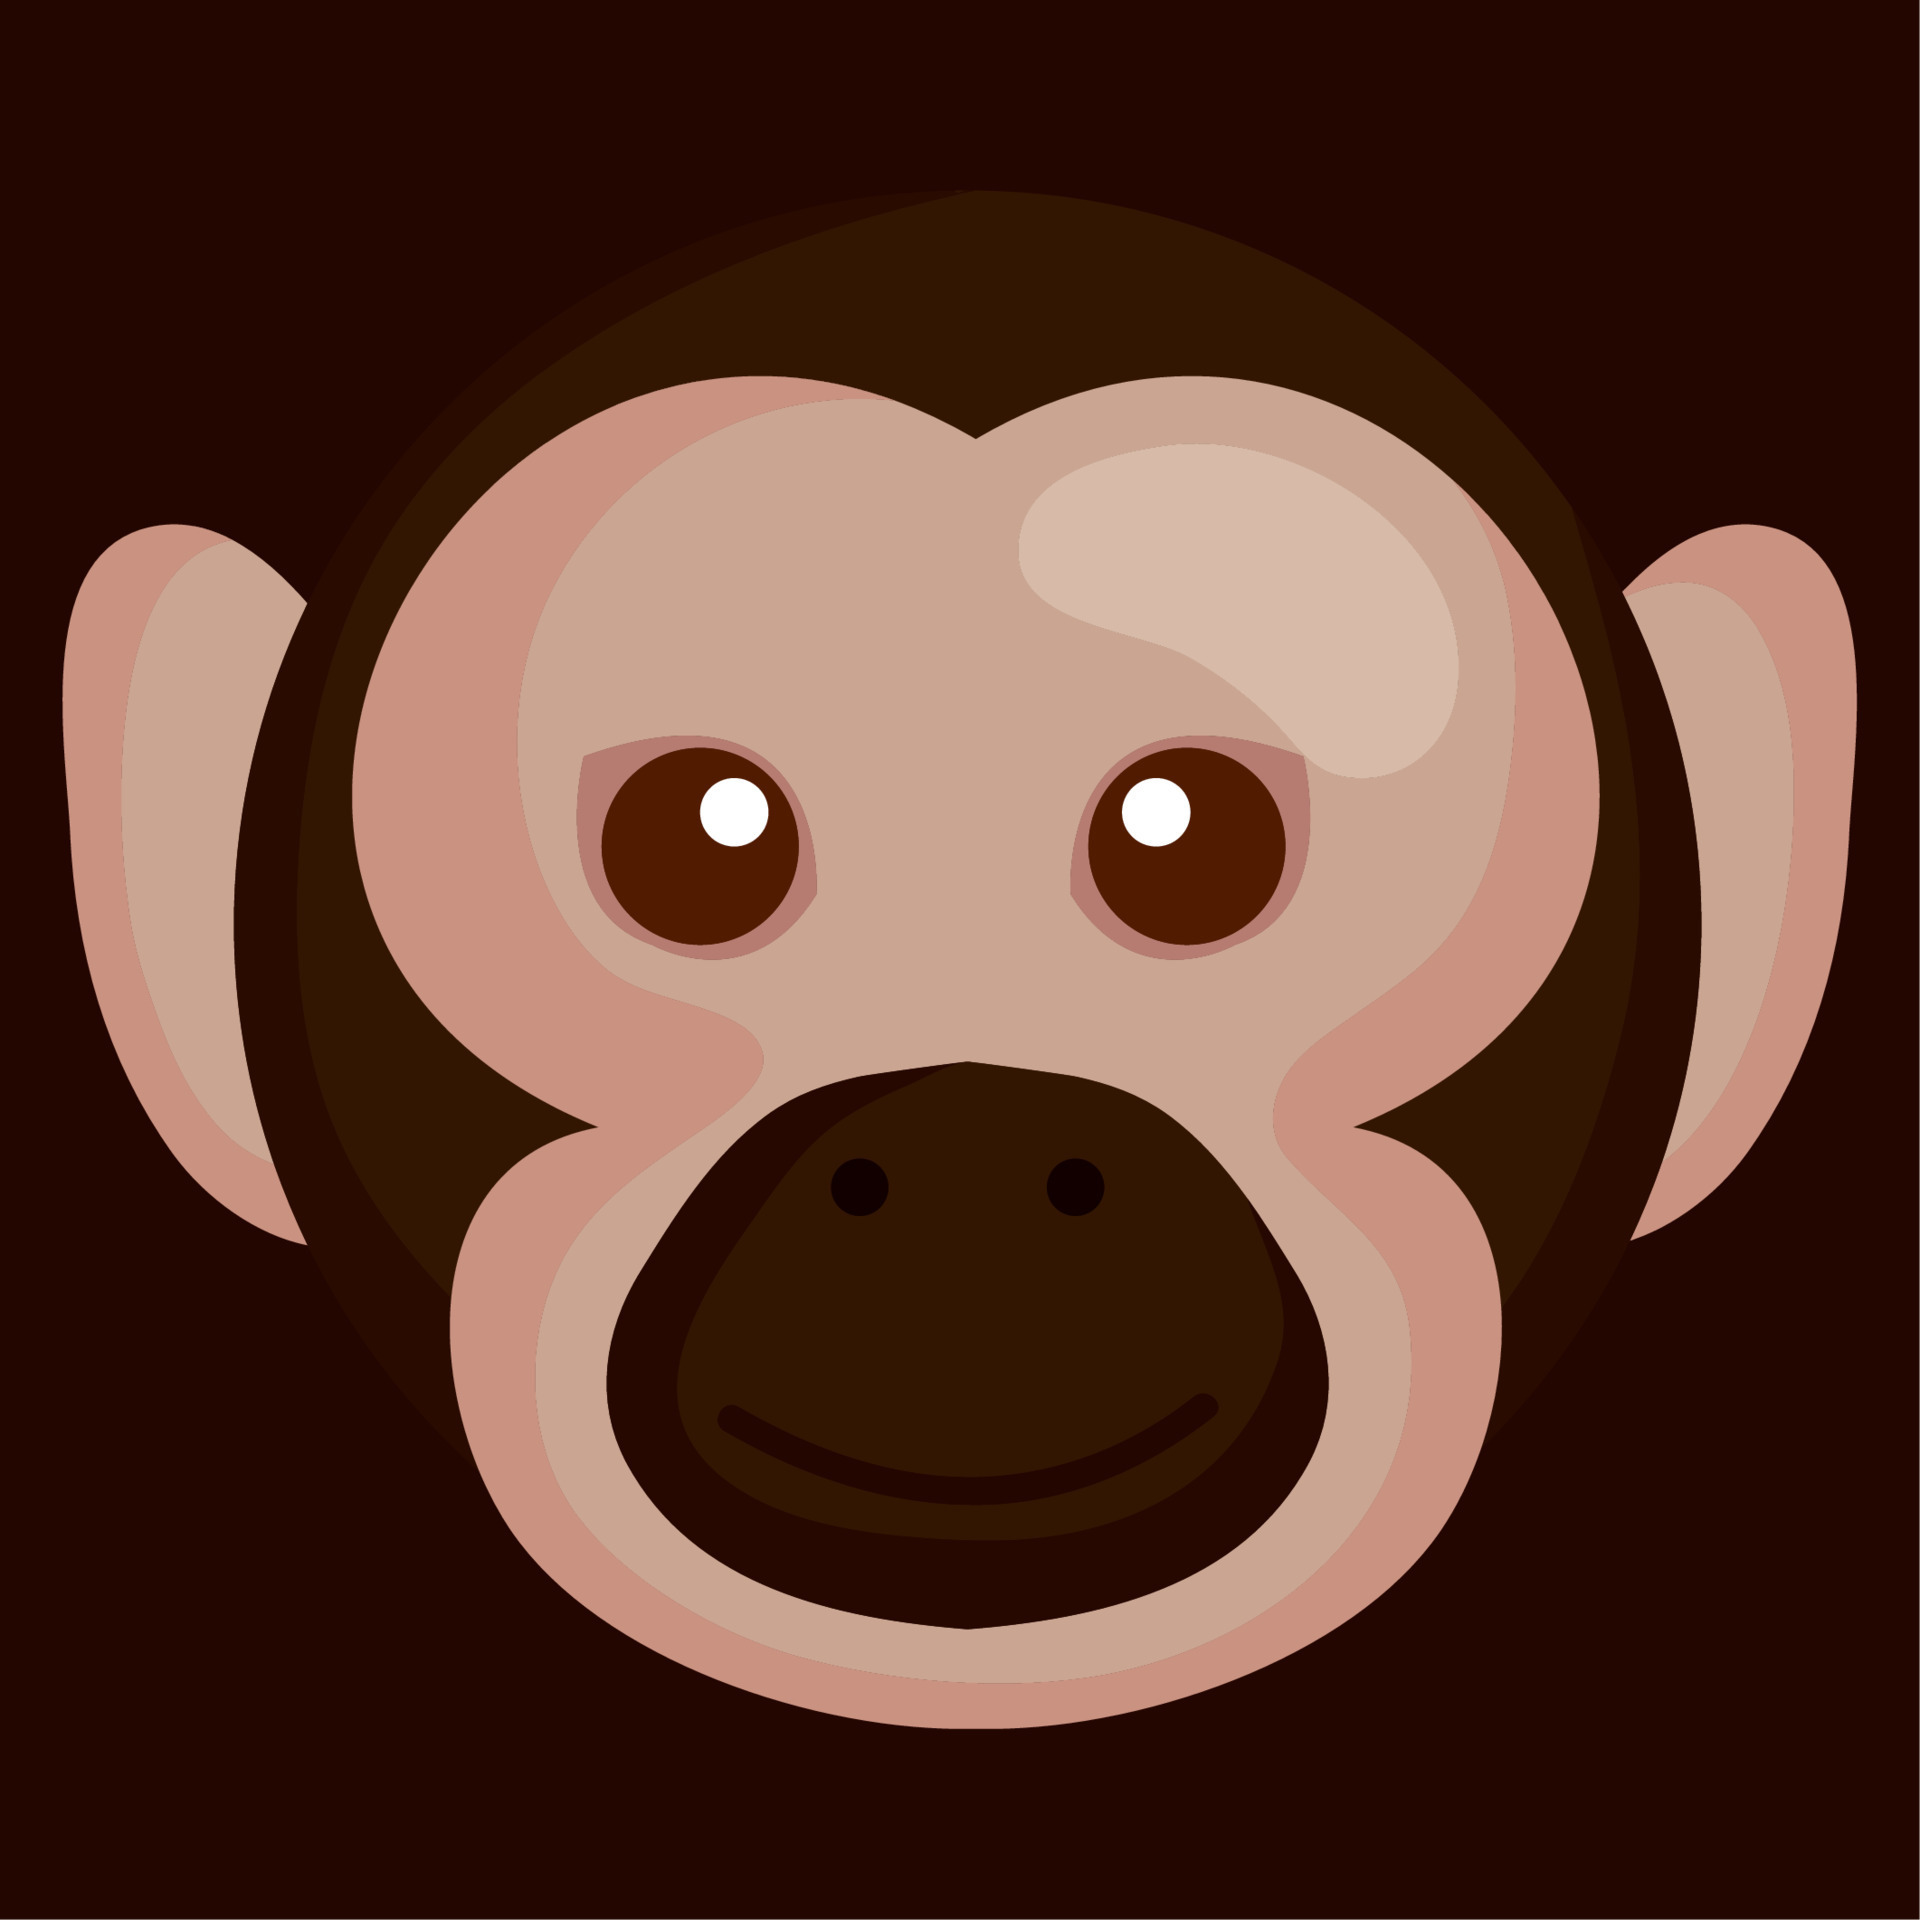 macaque monkey head animal 11374838 Vector Art at Vecteezy